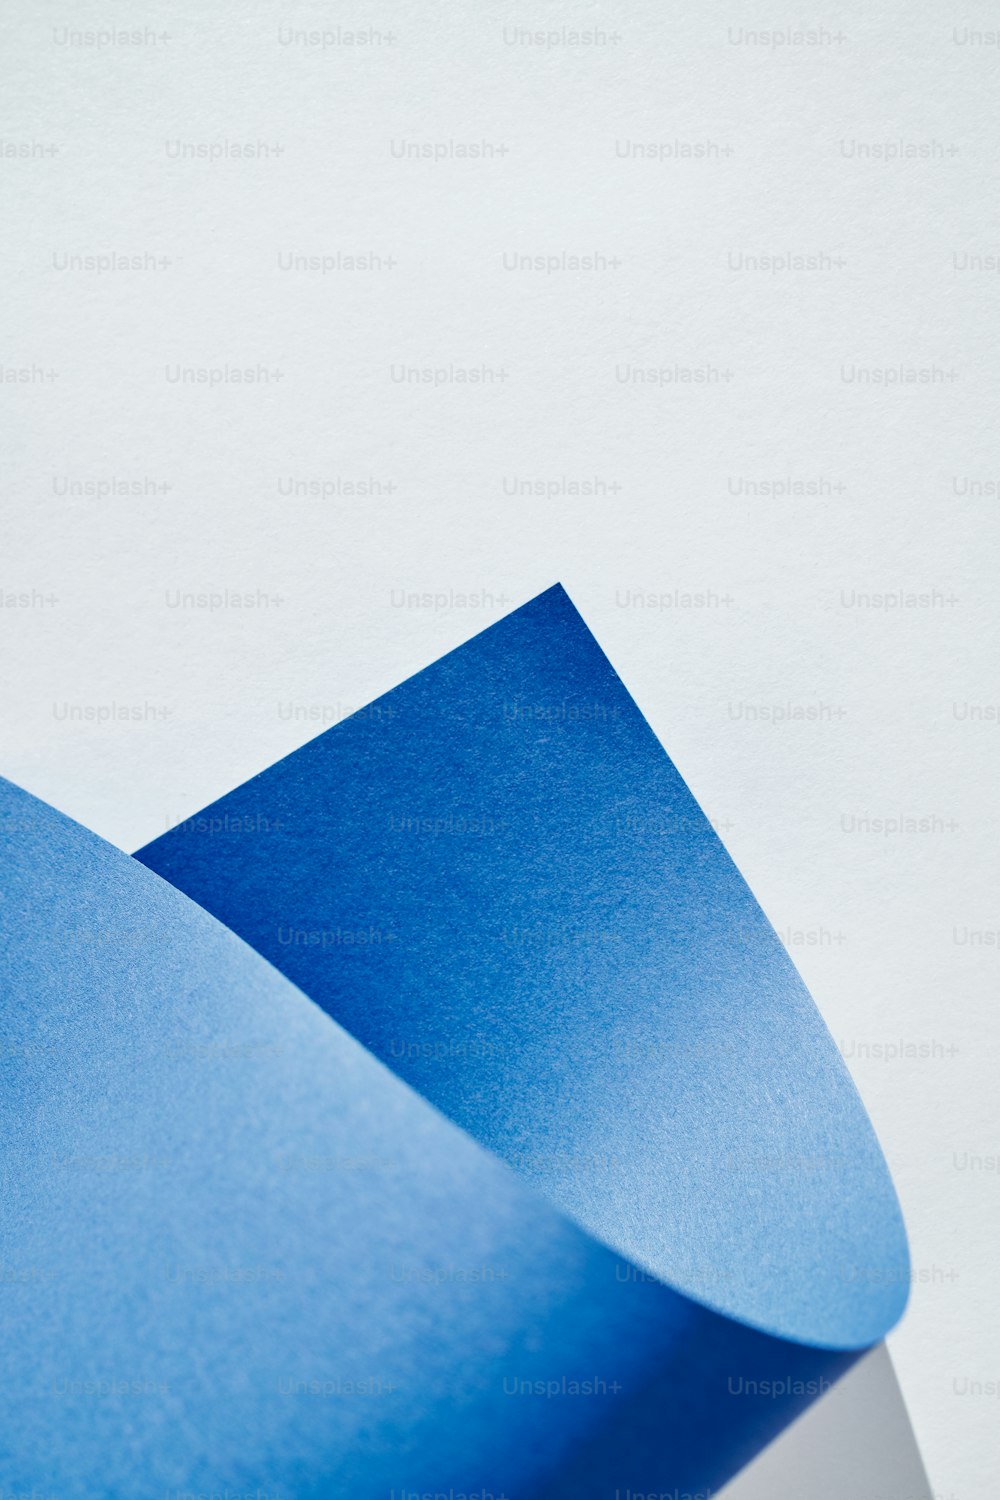 um close up de um pedaço de papel azul